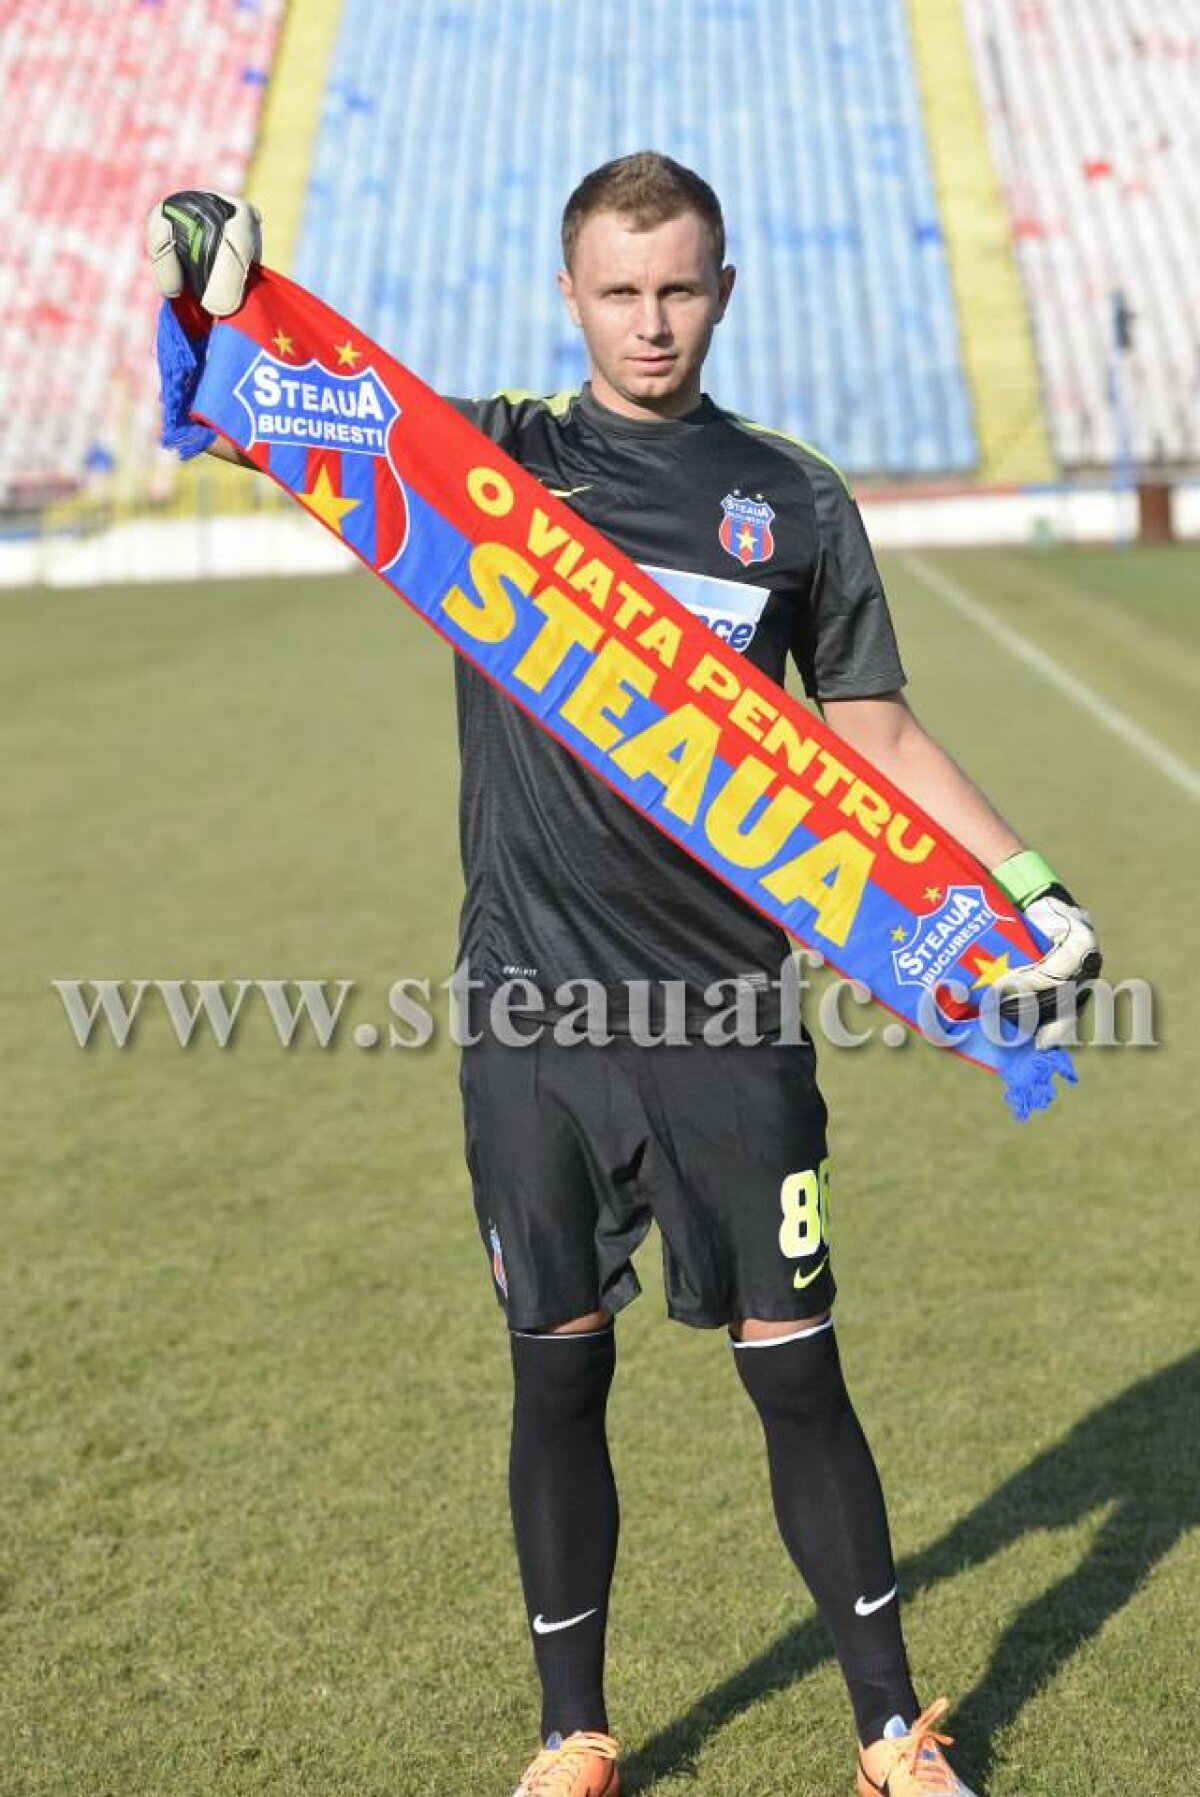 FOTO Martin Bogatinov a semnat cu Steaua! » Prima reacţie de la venirea în Ghencea